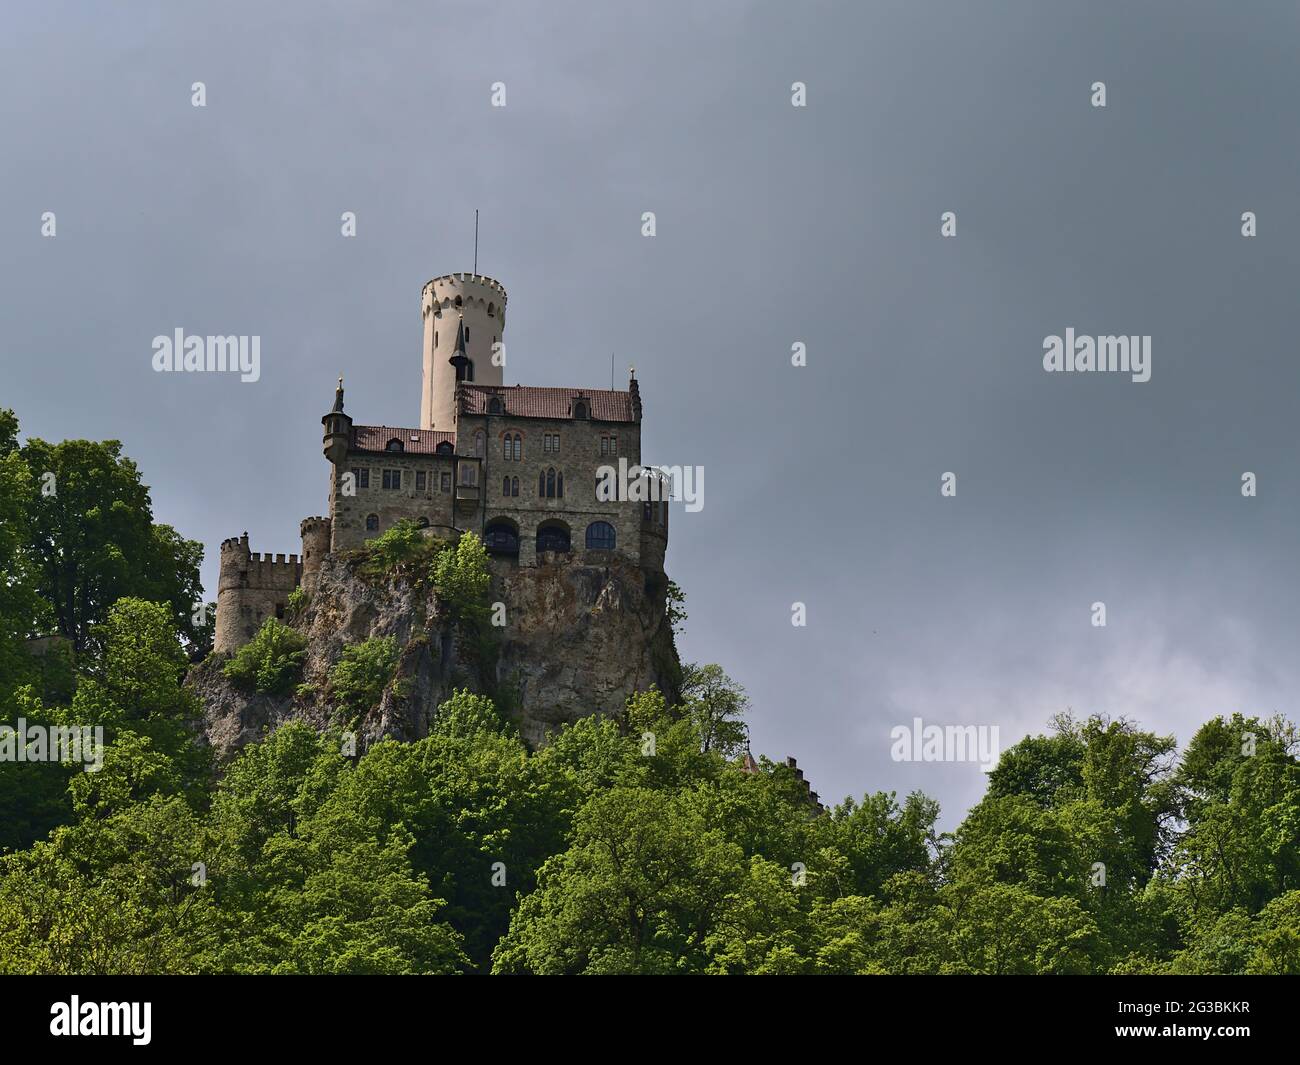 Splendida vista ad angolo basso del popolare castello di Lichtenstein situato sulla scarpata dell'Alb Svevo, Germania con foresta verde in primavera e cielo nuvoloso. Foto Stock